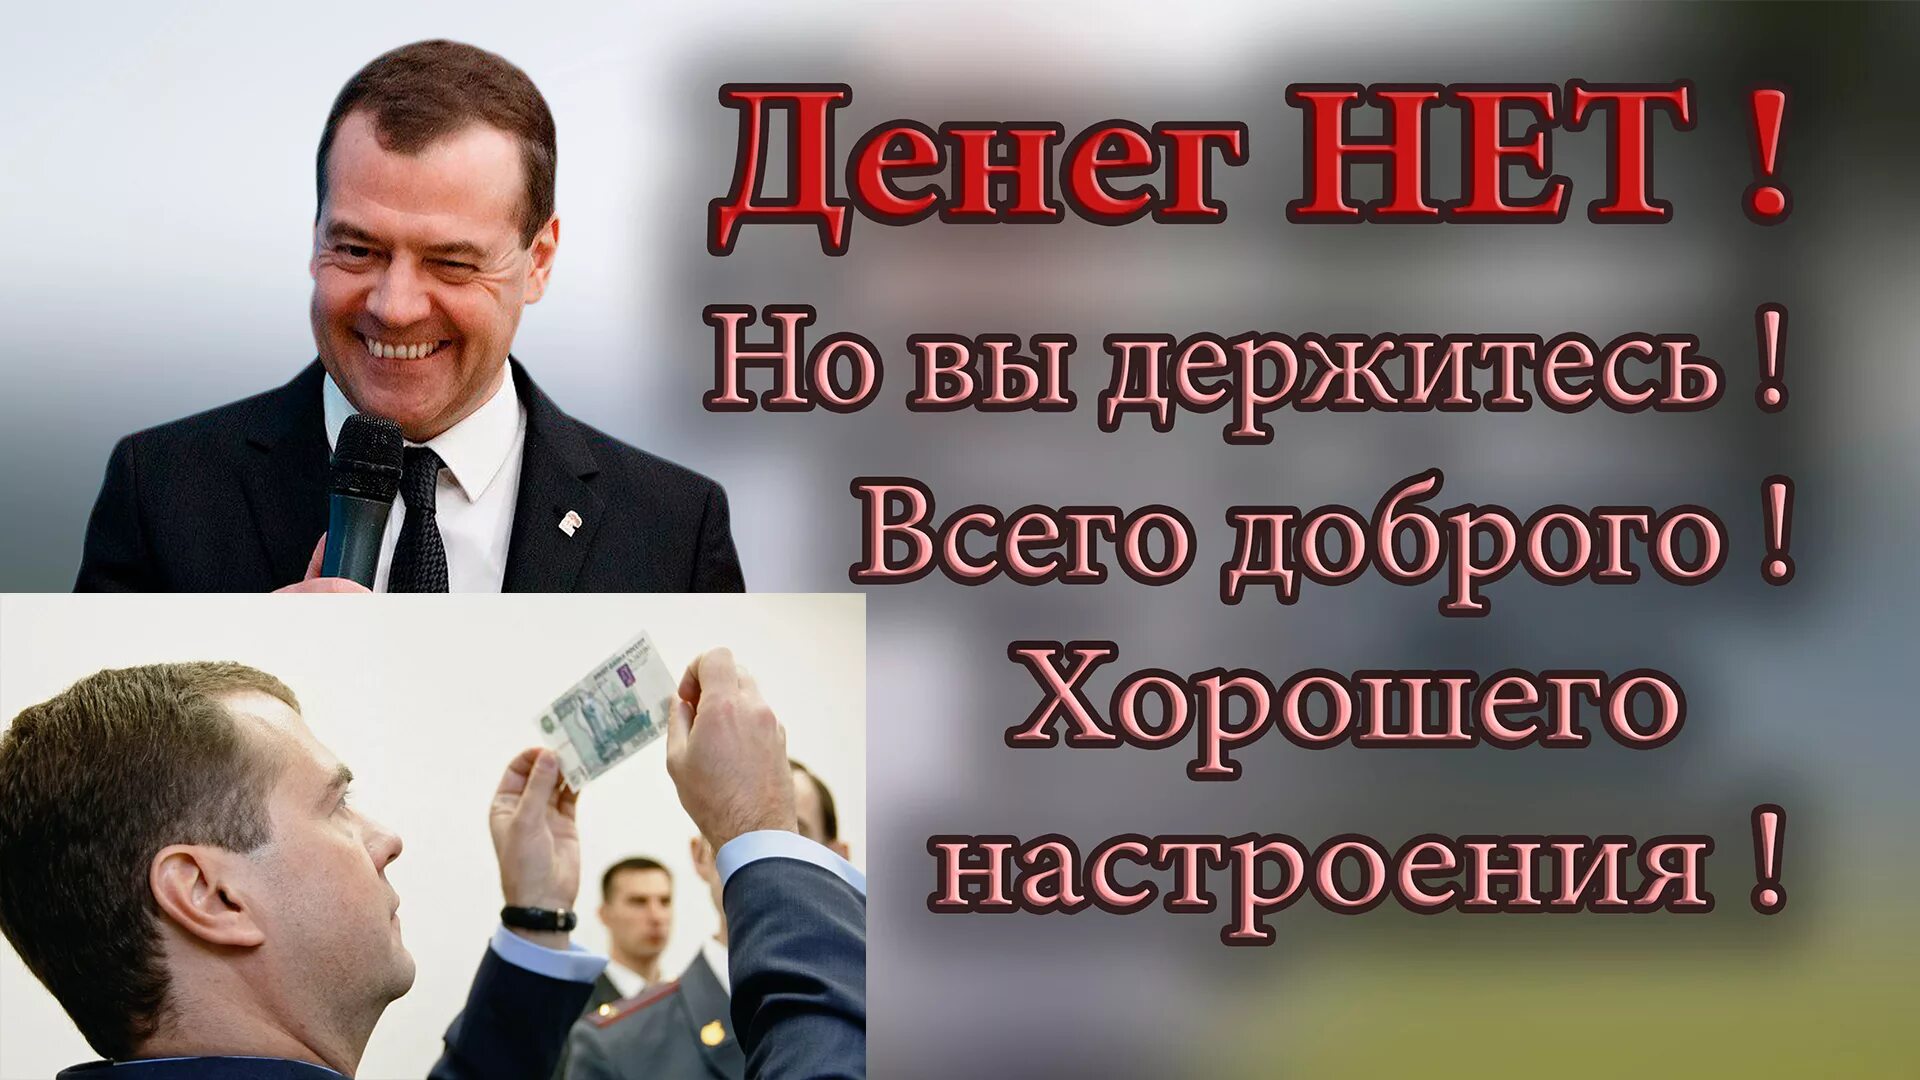 Кто сказал денег нет но вы держитесь. Держитесь хорошего настроения. Денег нет всем хорошего настроения. Денег нет но вы держитесь Медведев. Денег нет хорошего вам настроения.